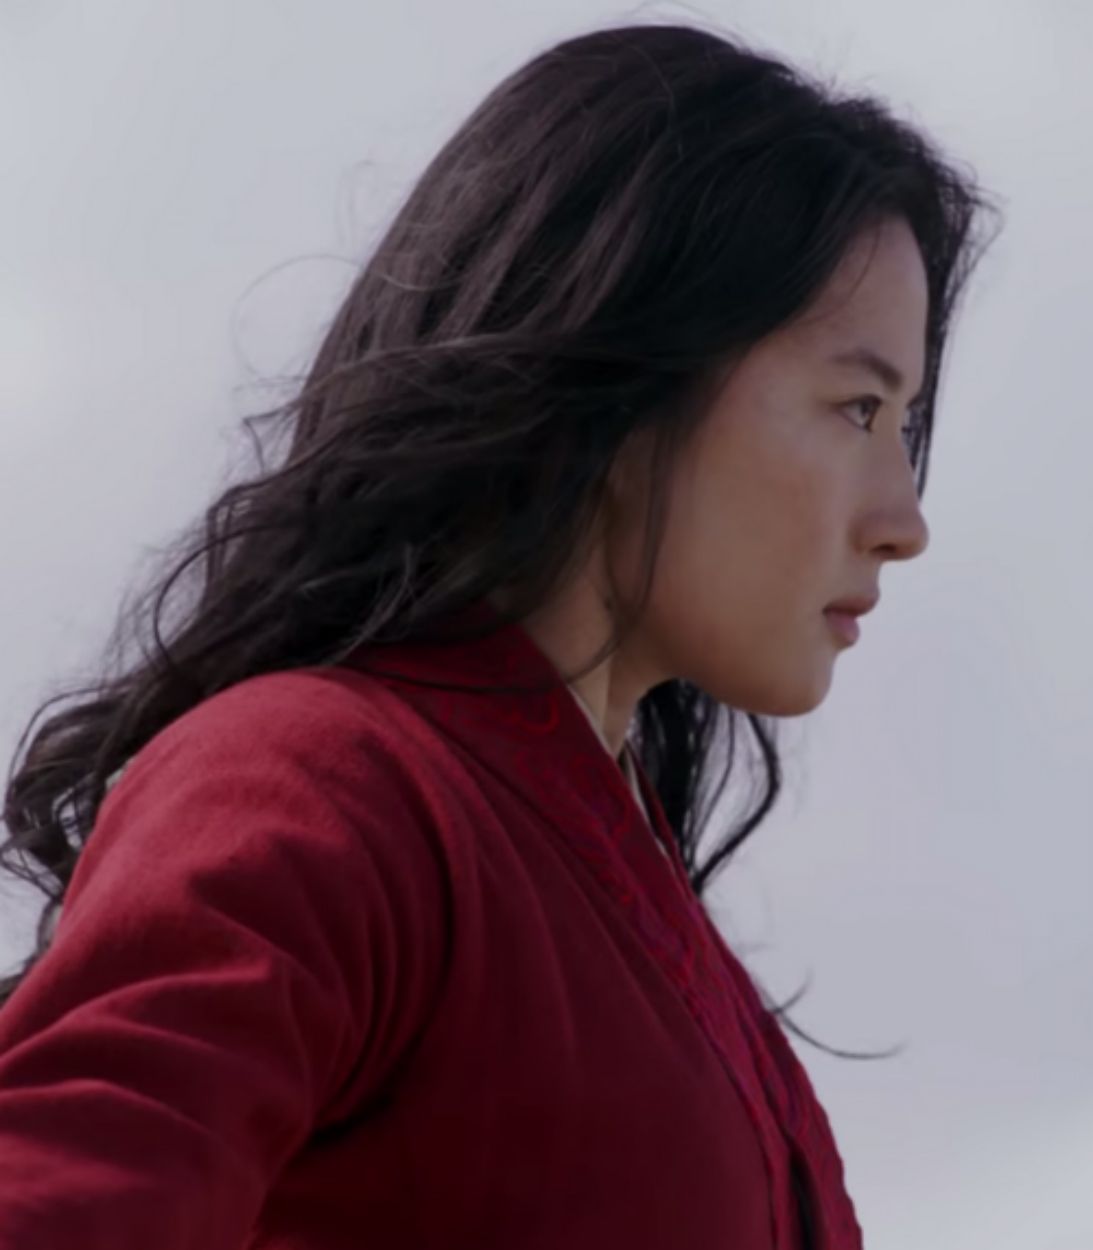 Mulan Live-Action Trailer Ending Vertical